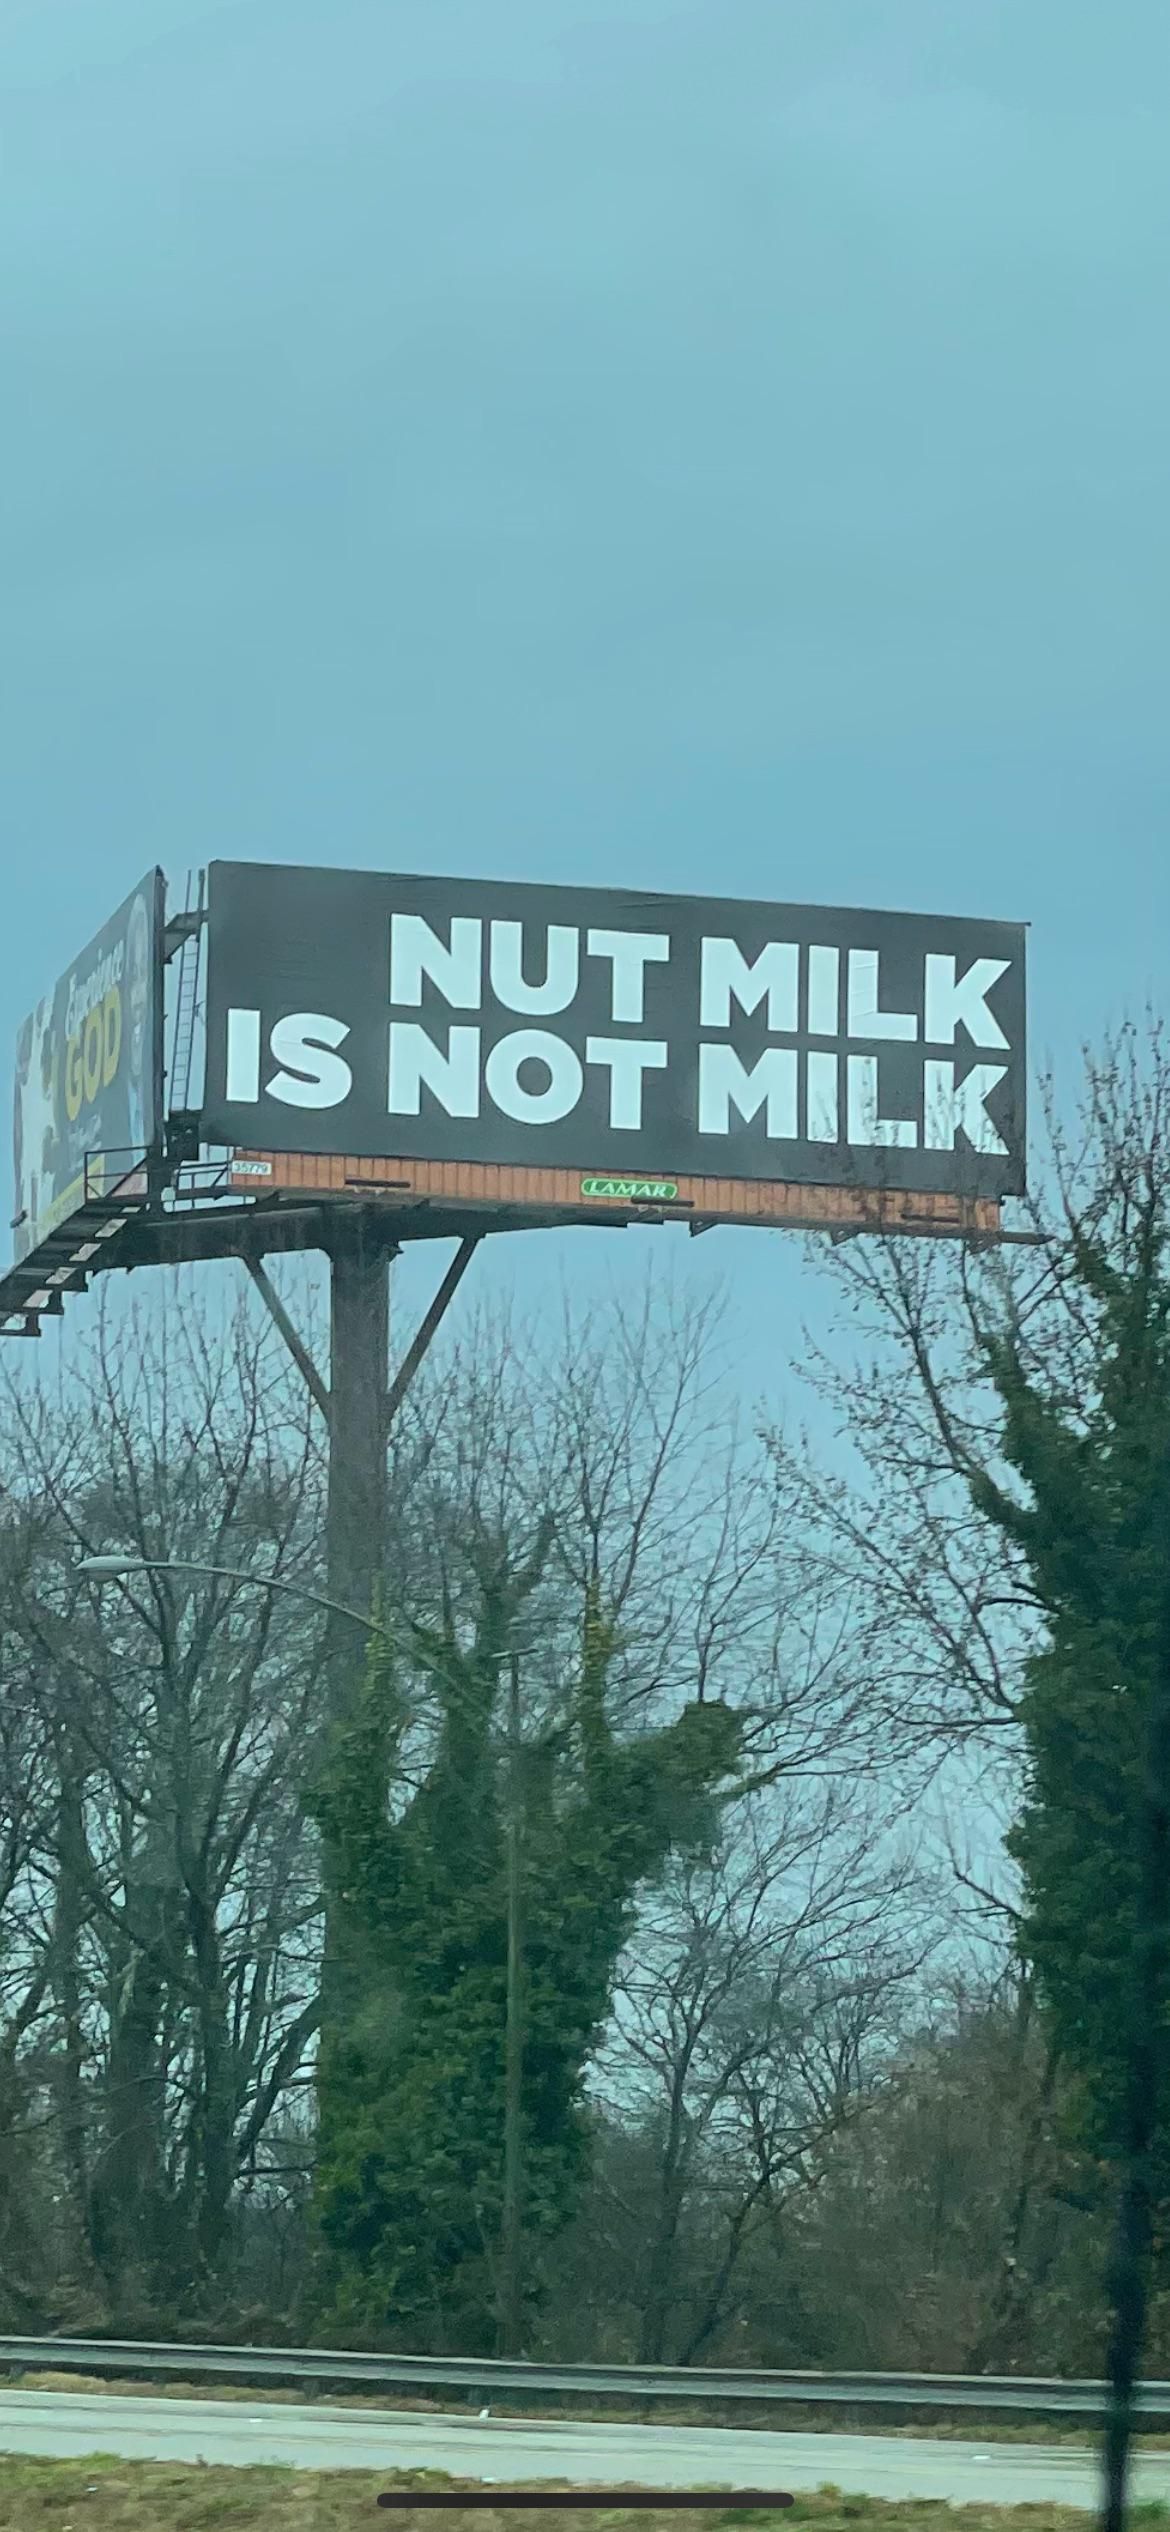 Actual billboard in Atlanta. Within 2 Miles of ATL airport.